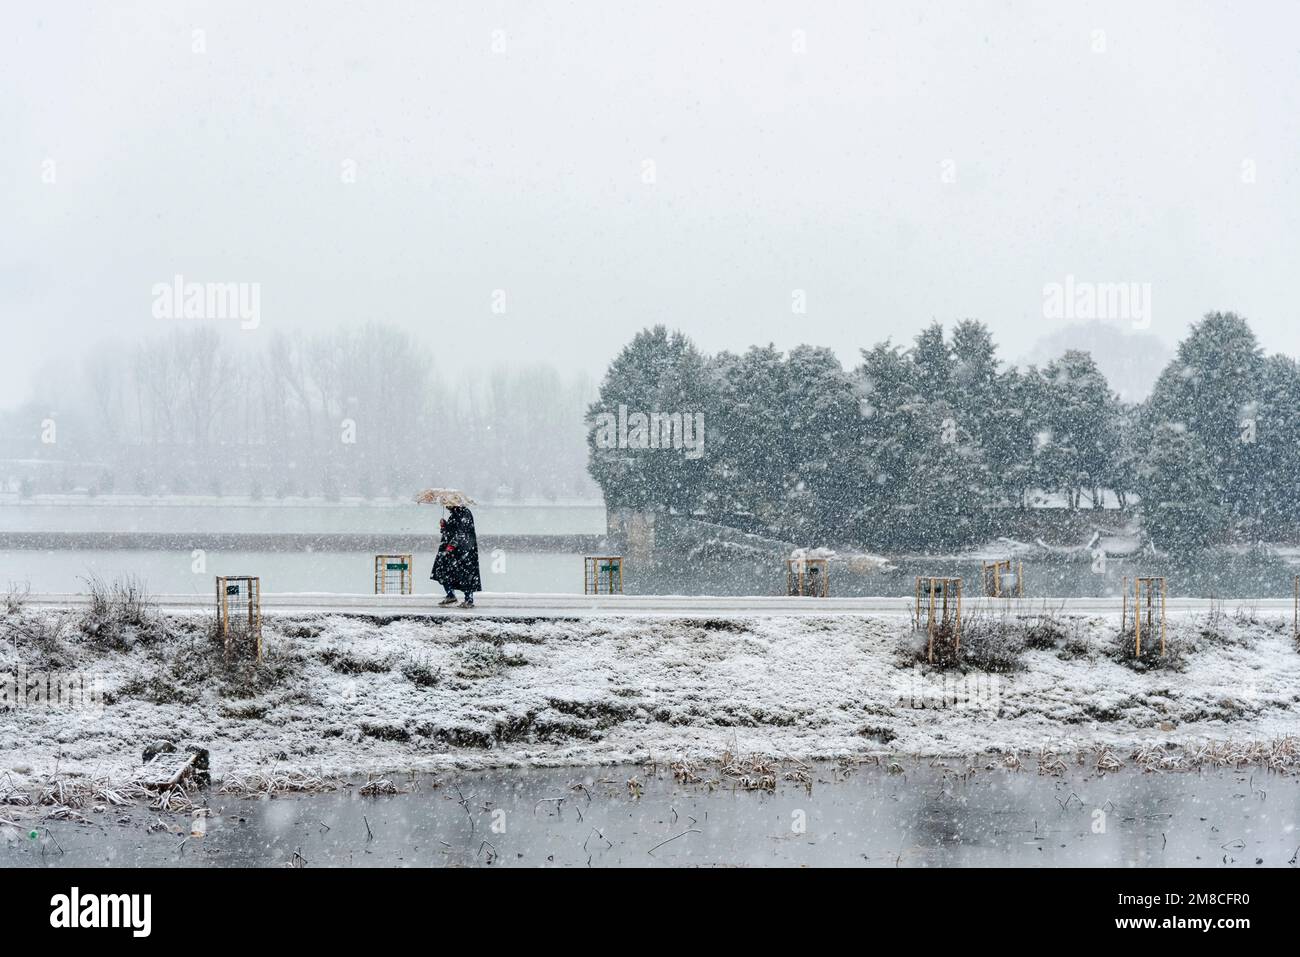 Un uomo con un ombrello cammina lungo una strada innevata durante le nevicate. Il Kashmir ha ricevuto nevicate fresche, con le cali più alte della valle che hanno ricevuto nevicate da moderate a pesanti e nevicate da leggere a moderate in pianura, causando una visibilità distruttiva. Questo ha influito sulle operazioni di volo insieme alla chiusura dell'autostrada nazionale Srinagar-Jammu. Foto Stock